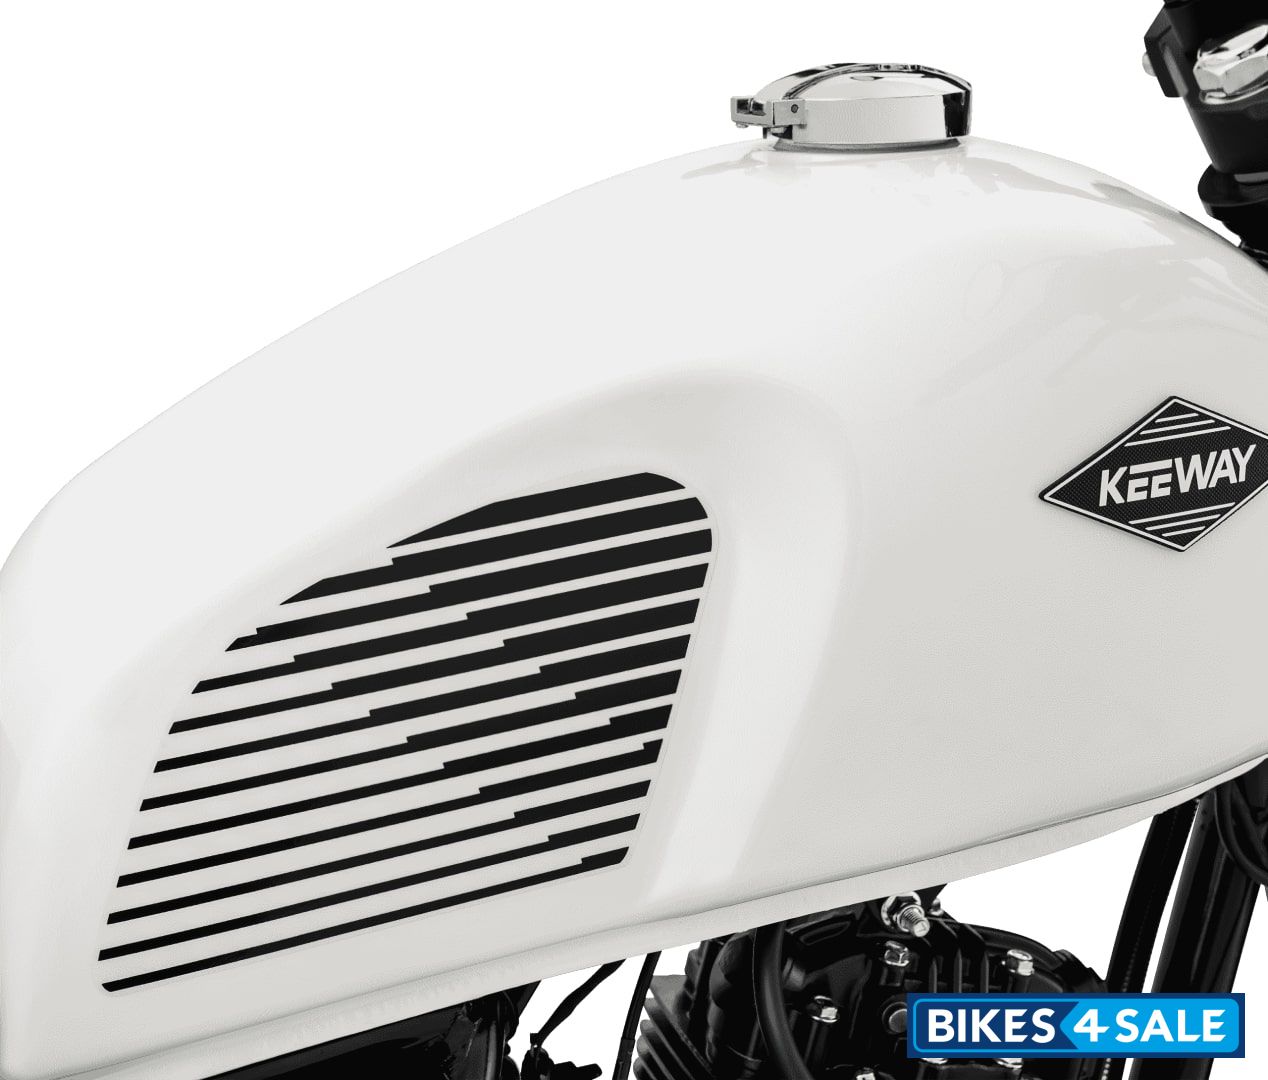 Keeway SR 125 - Vintage-inspired Design